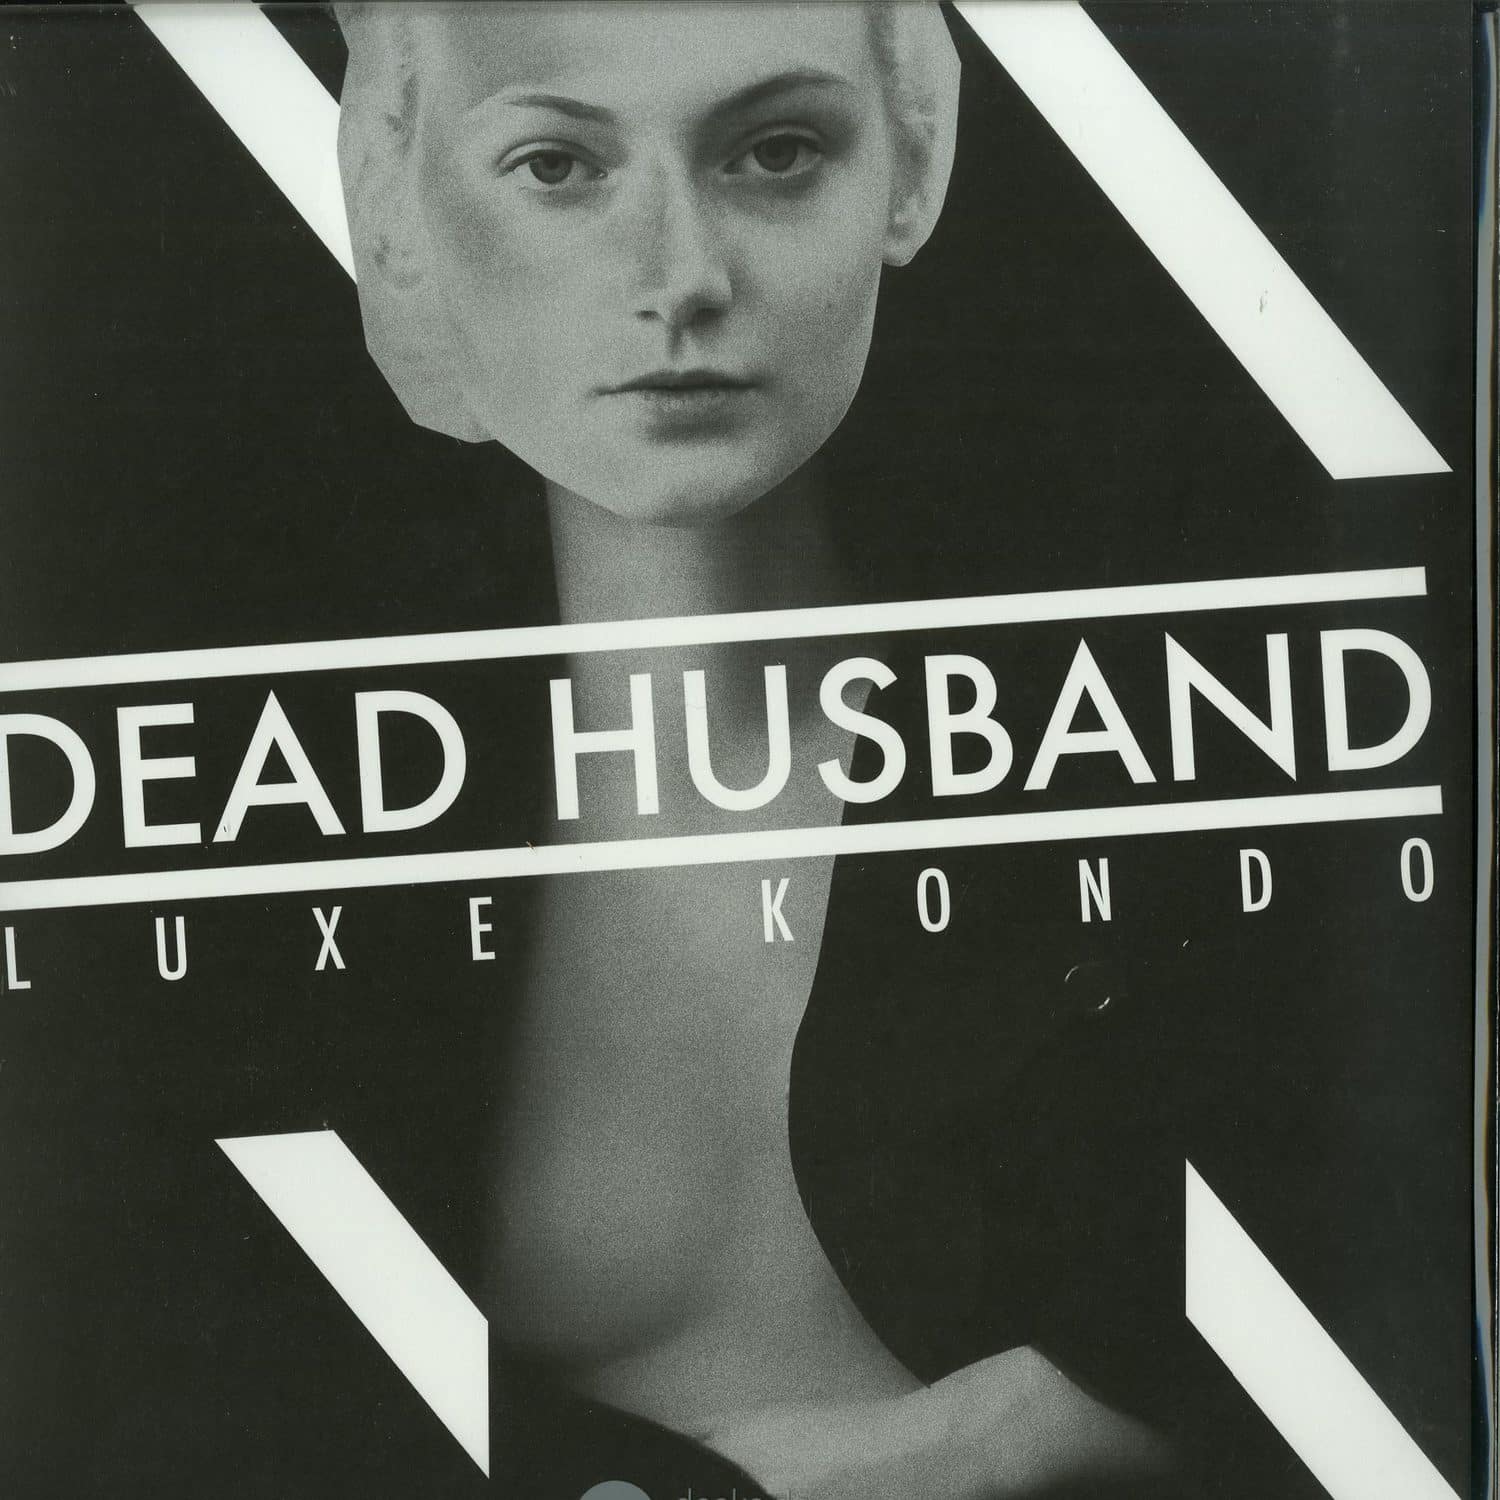 Dead Husband - LUXE KONDO 